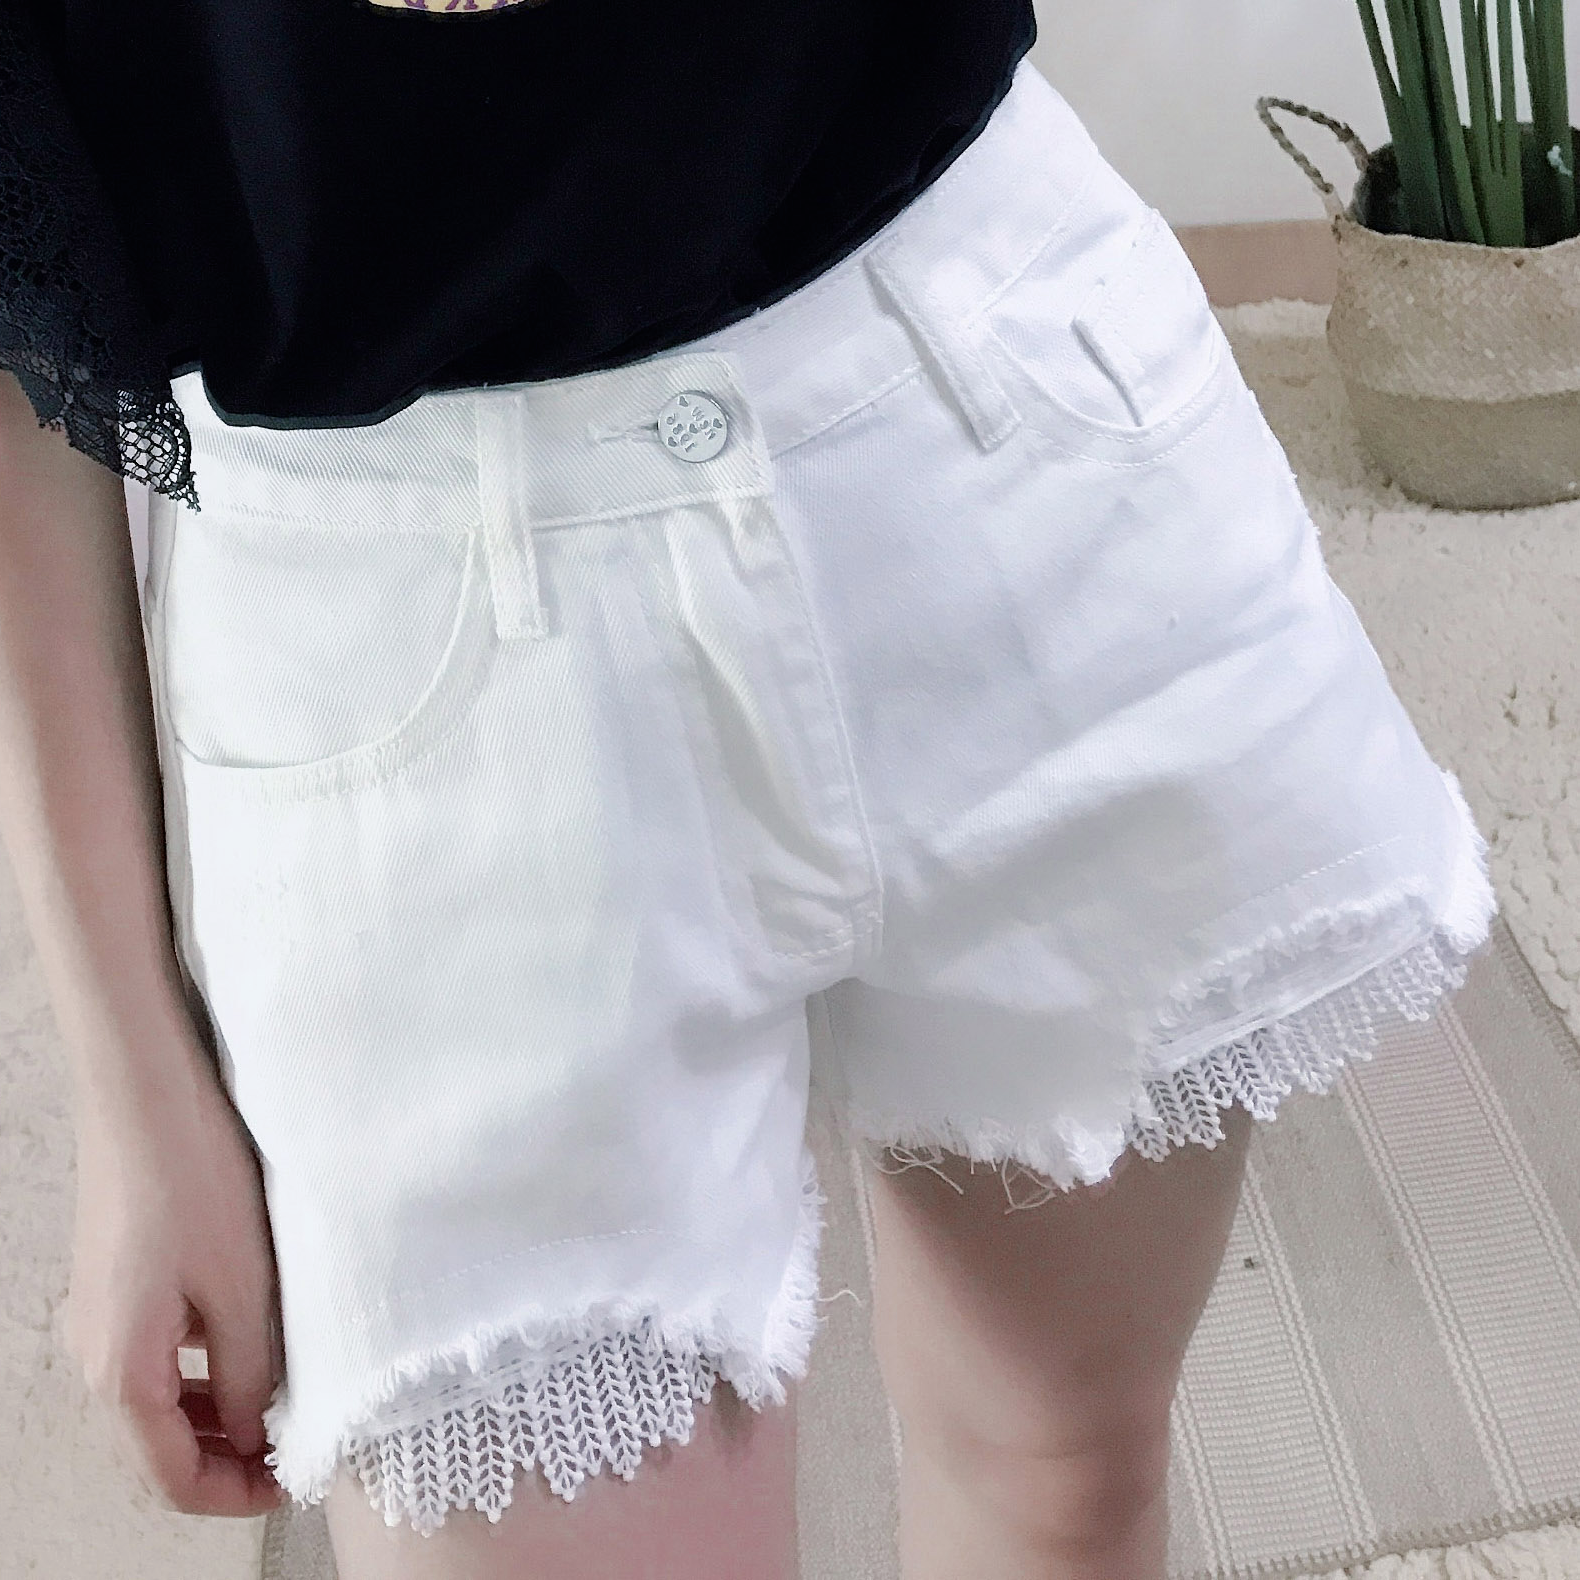 「4折」 正韓 🇰🇷 甜美女孩蕾絲牛仔短褲 BZ319 白褲 韓國進口 韓系